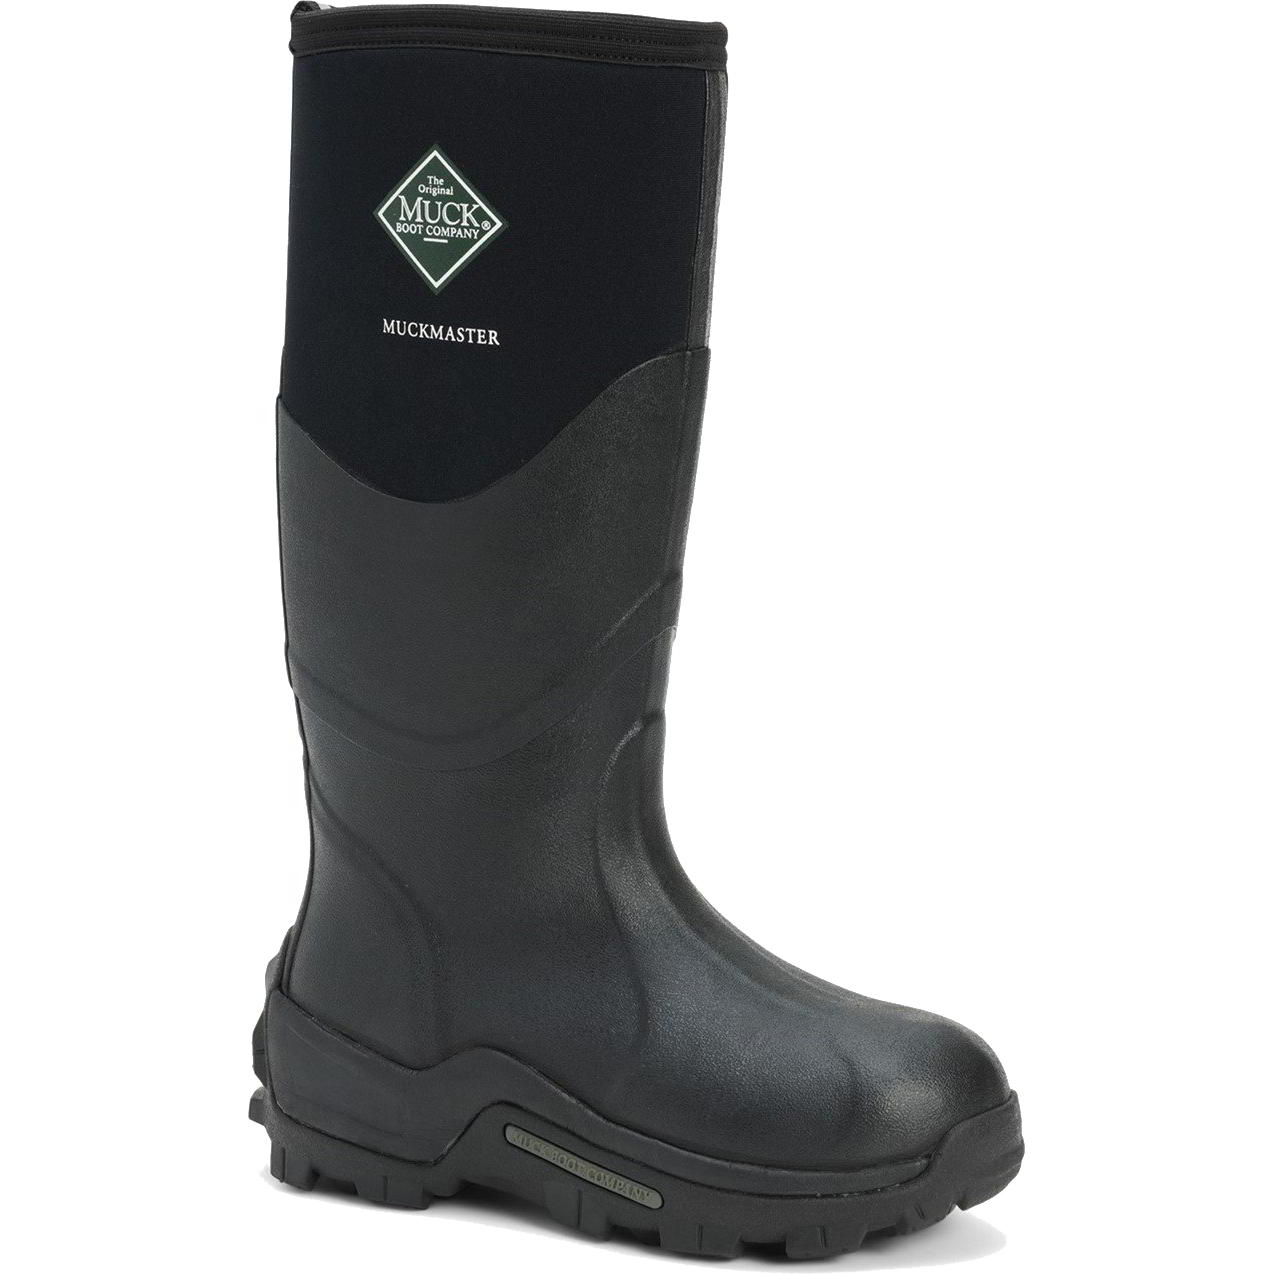 Muck Boots Mens Womens Master Neoprene Wellies Rain - UK 11 Black 2951